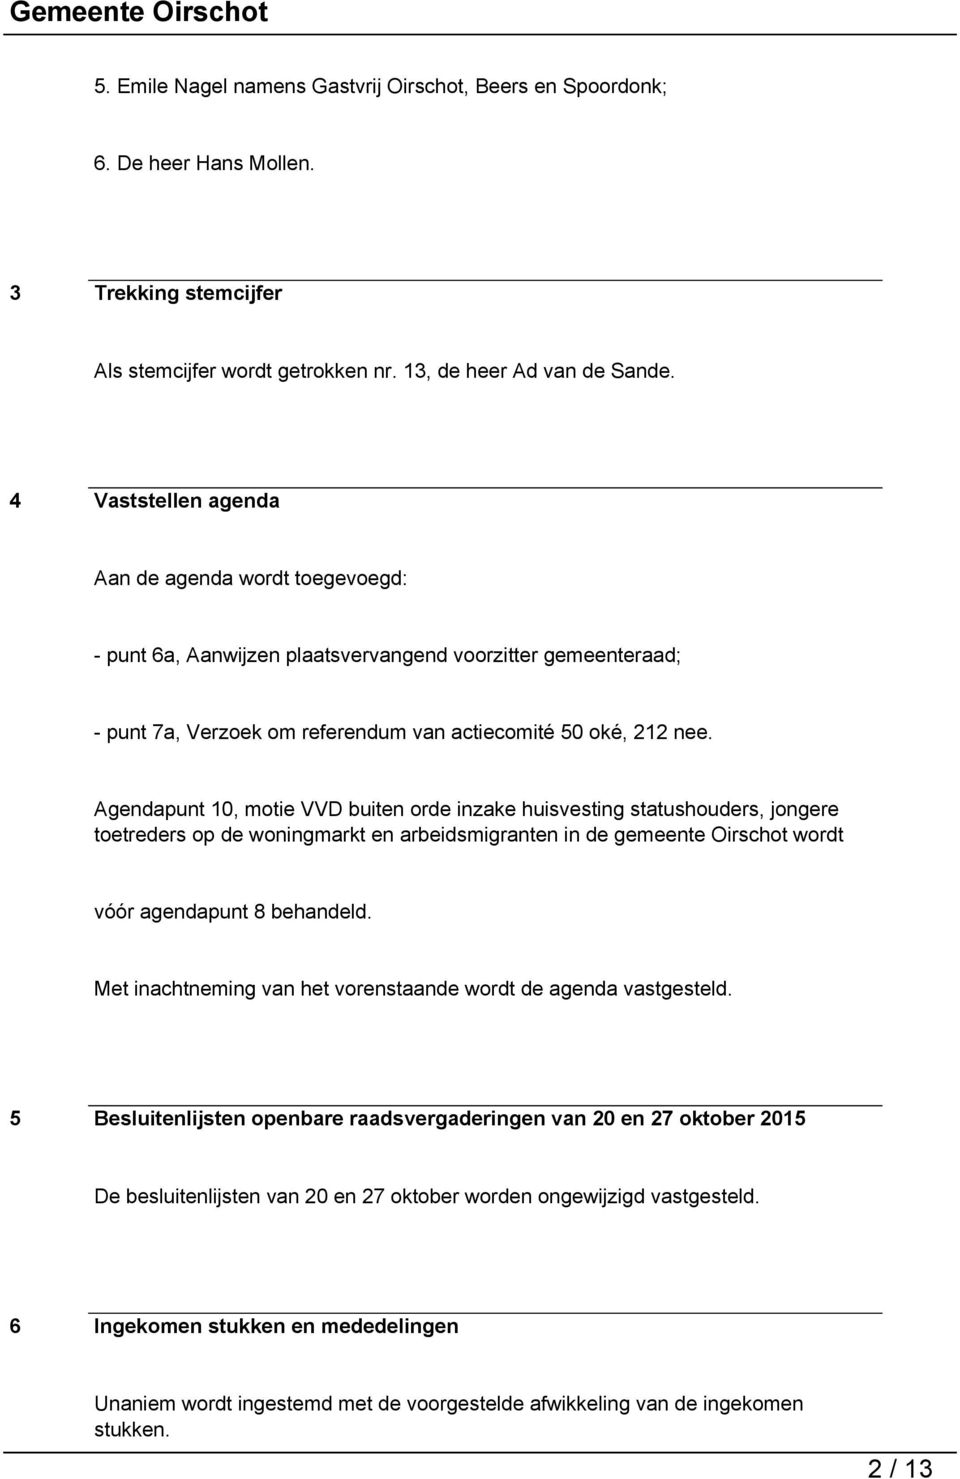 Agendapunt 10, motie VVD buiten orde inzake huisvesting statushouders, jongere toetreders op de woningmarkt en arbeidsmigranten in de gemeente Oirschot wordt vóór agendapunt 8 behandeld.